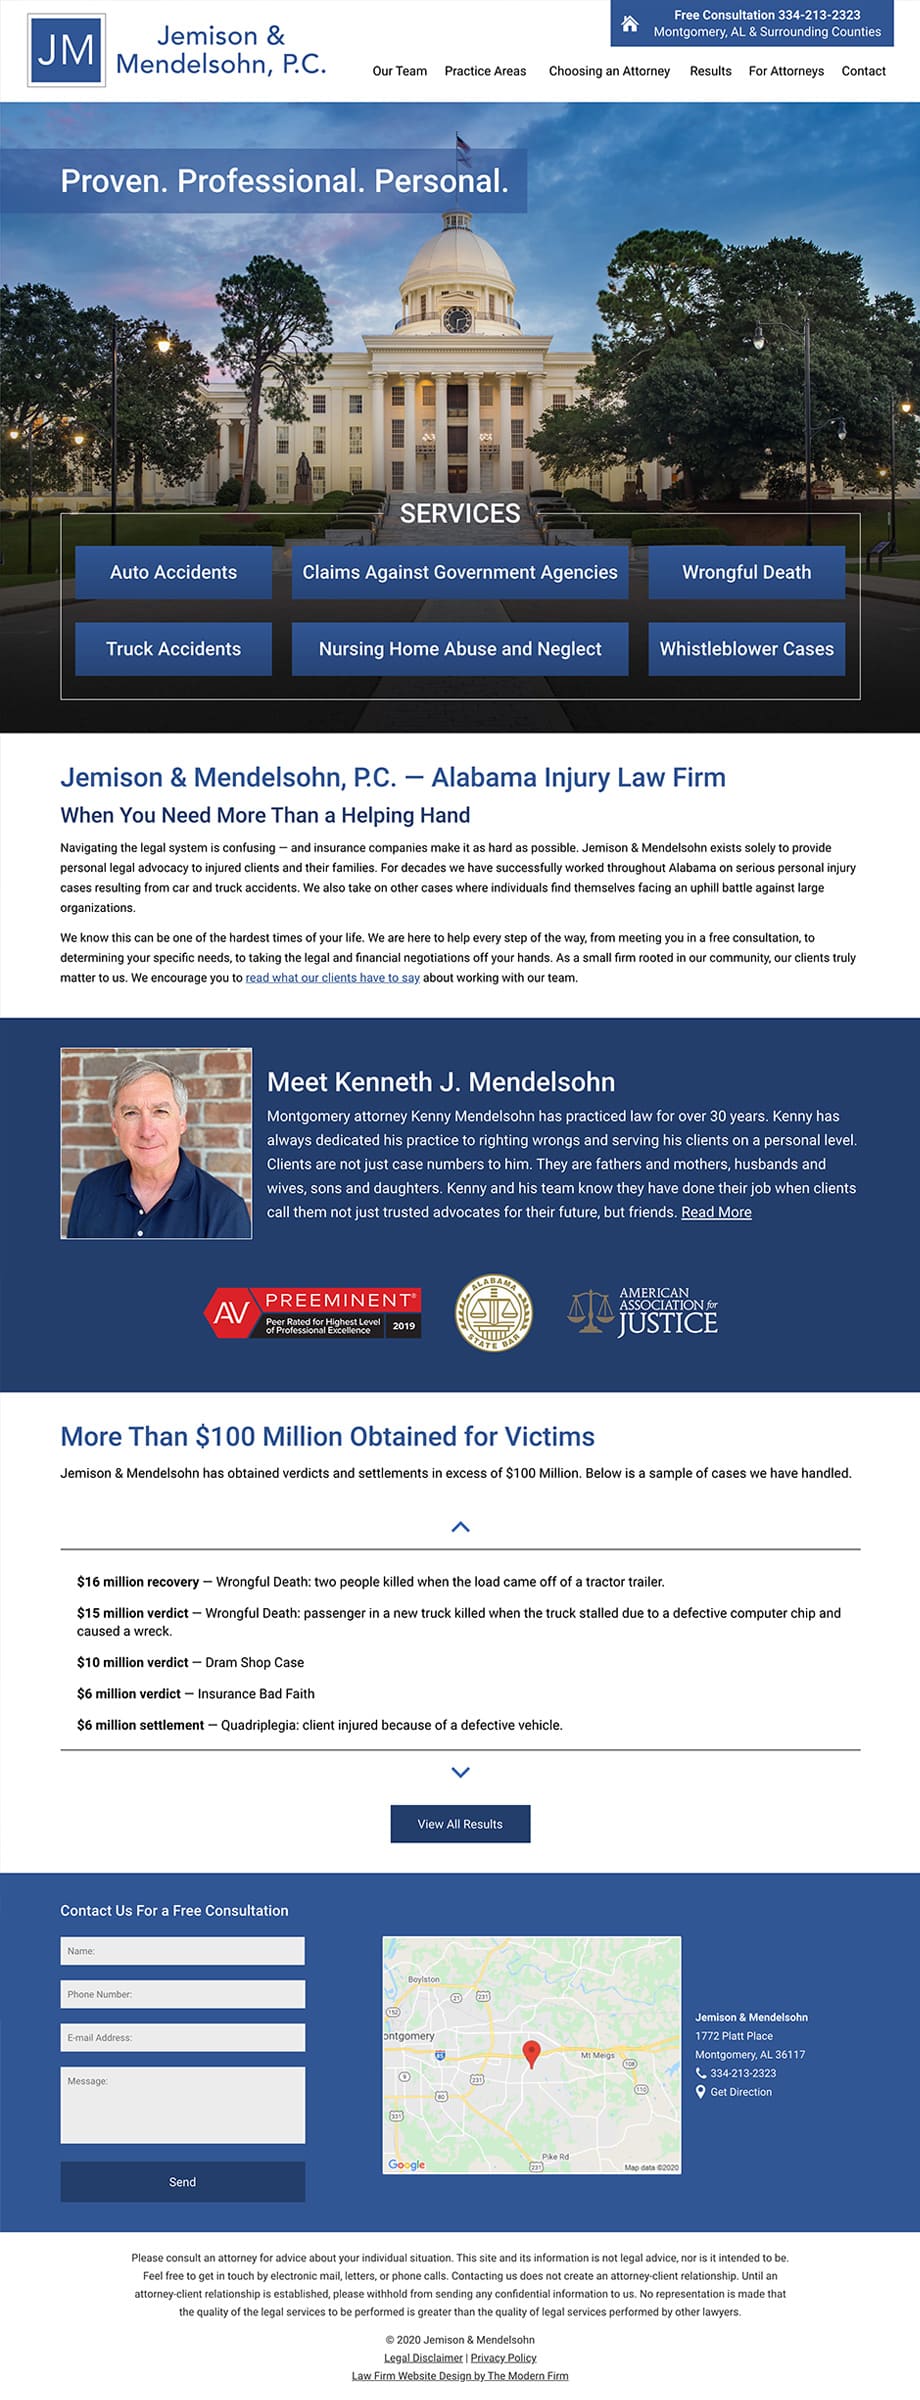 Law Firm Website for Jemison & Mendelsohn